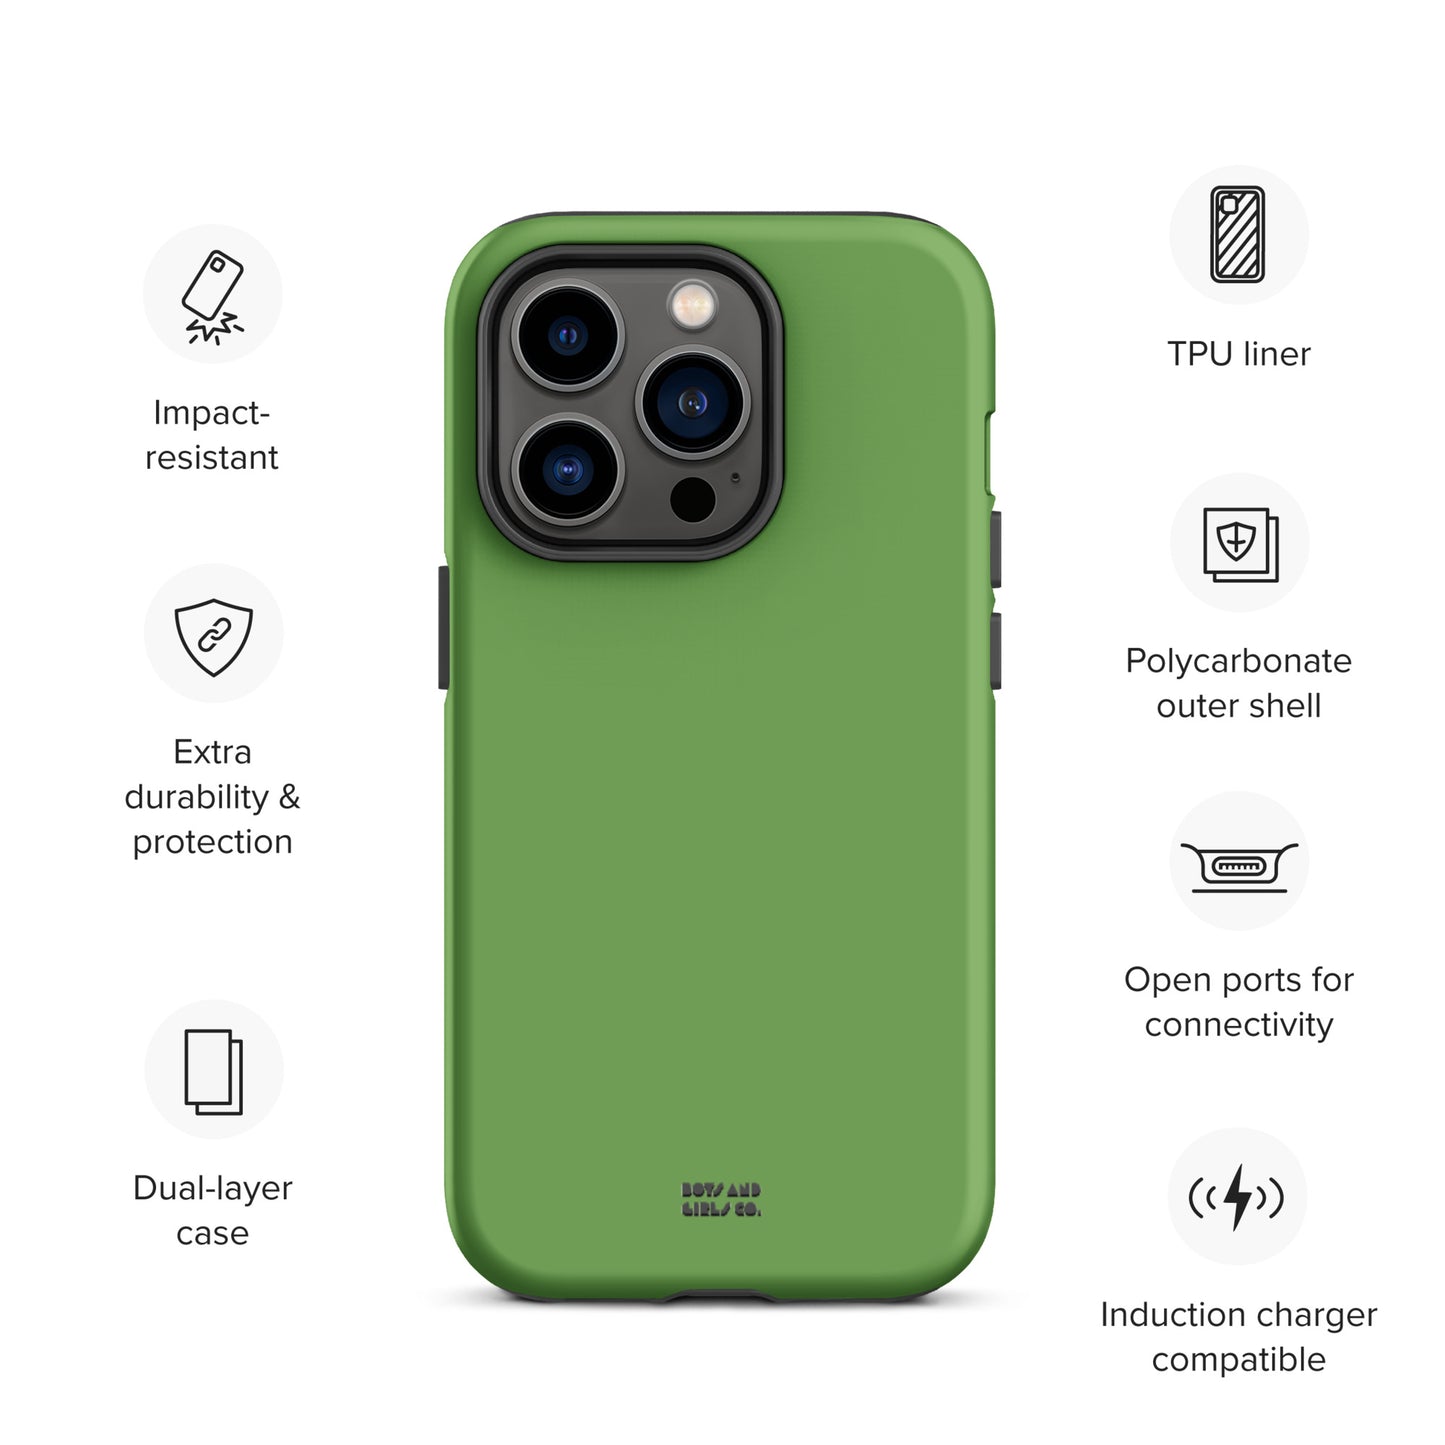 GREEN - Tough iPhone case